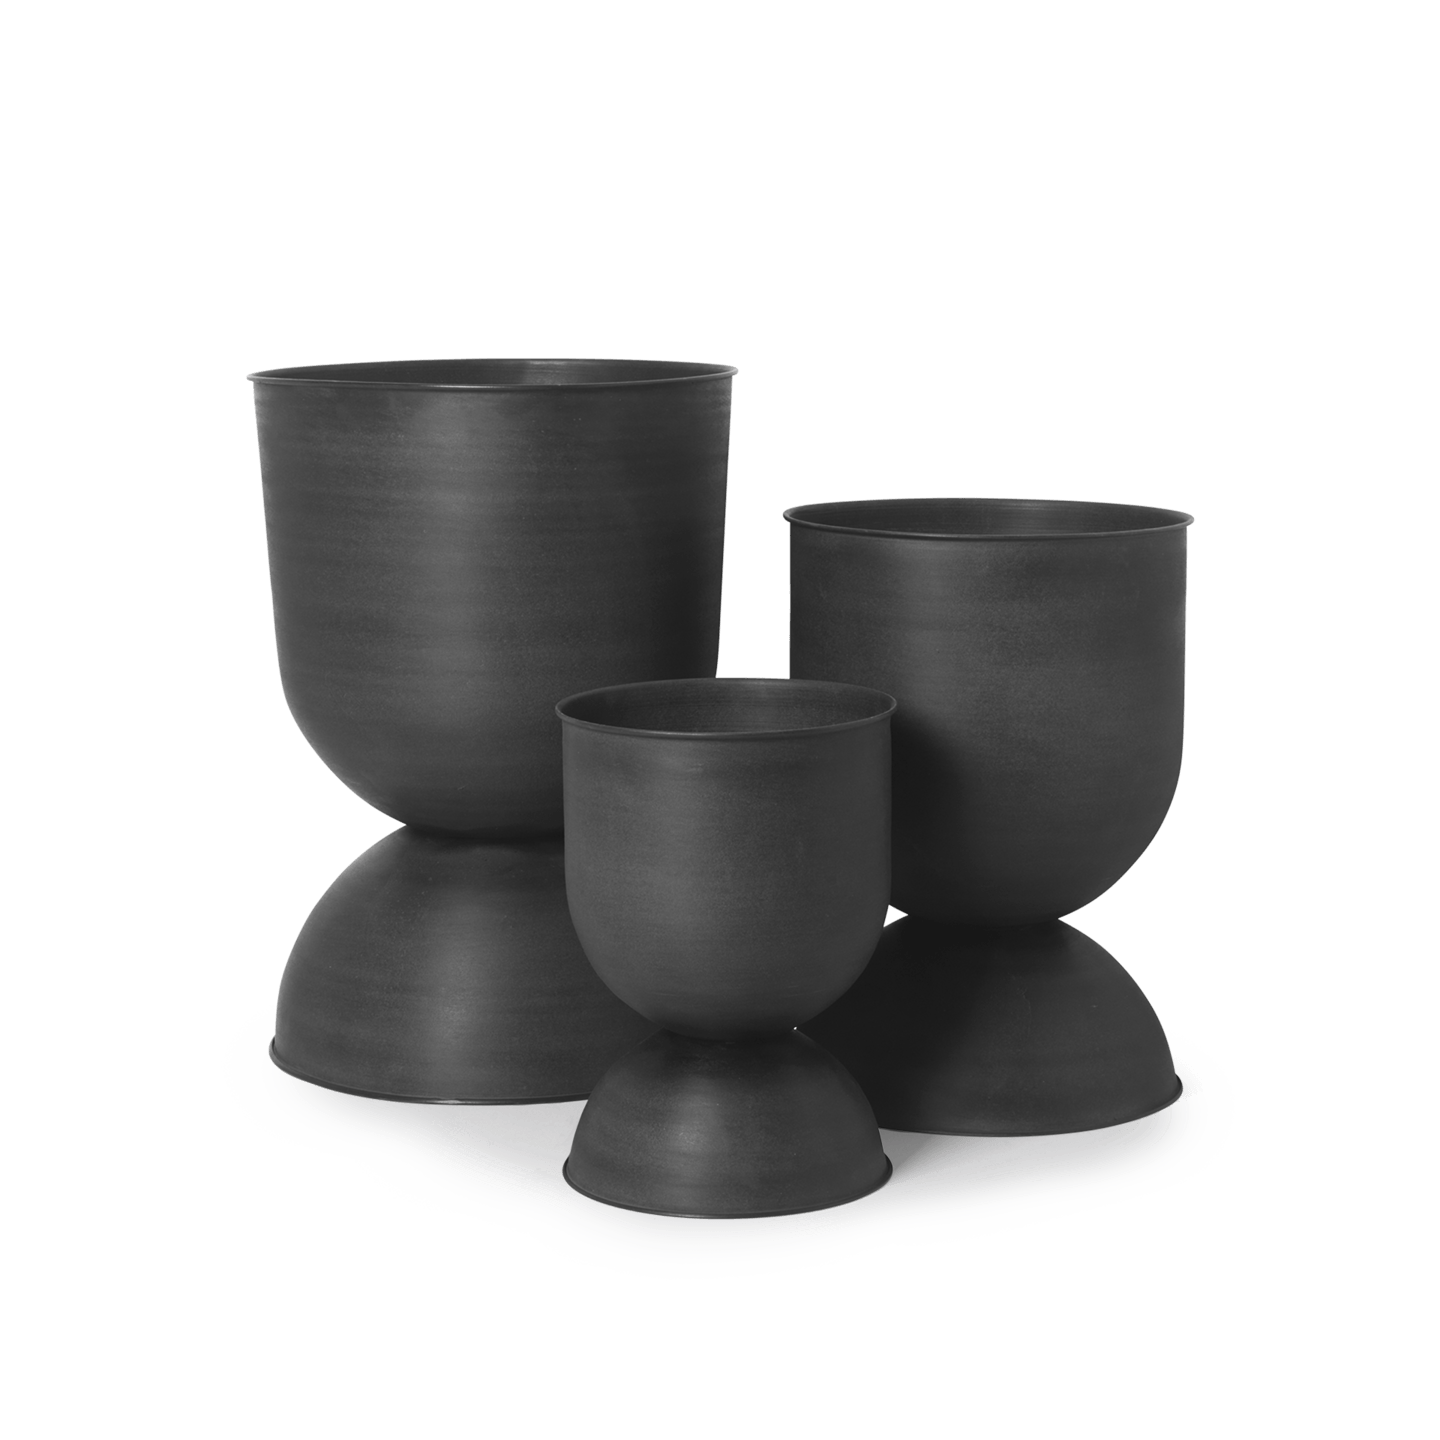 Ferm - Hourglass Pot - Small - Black/D. GreyFermFerm - Marz DesignsFerm Living